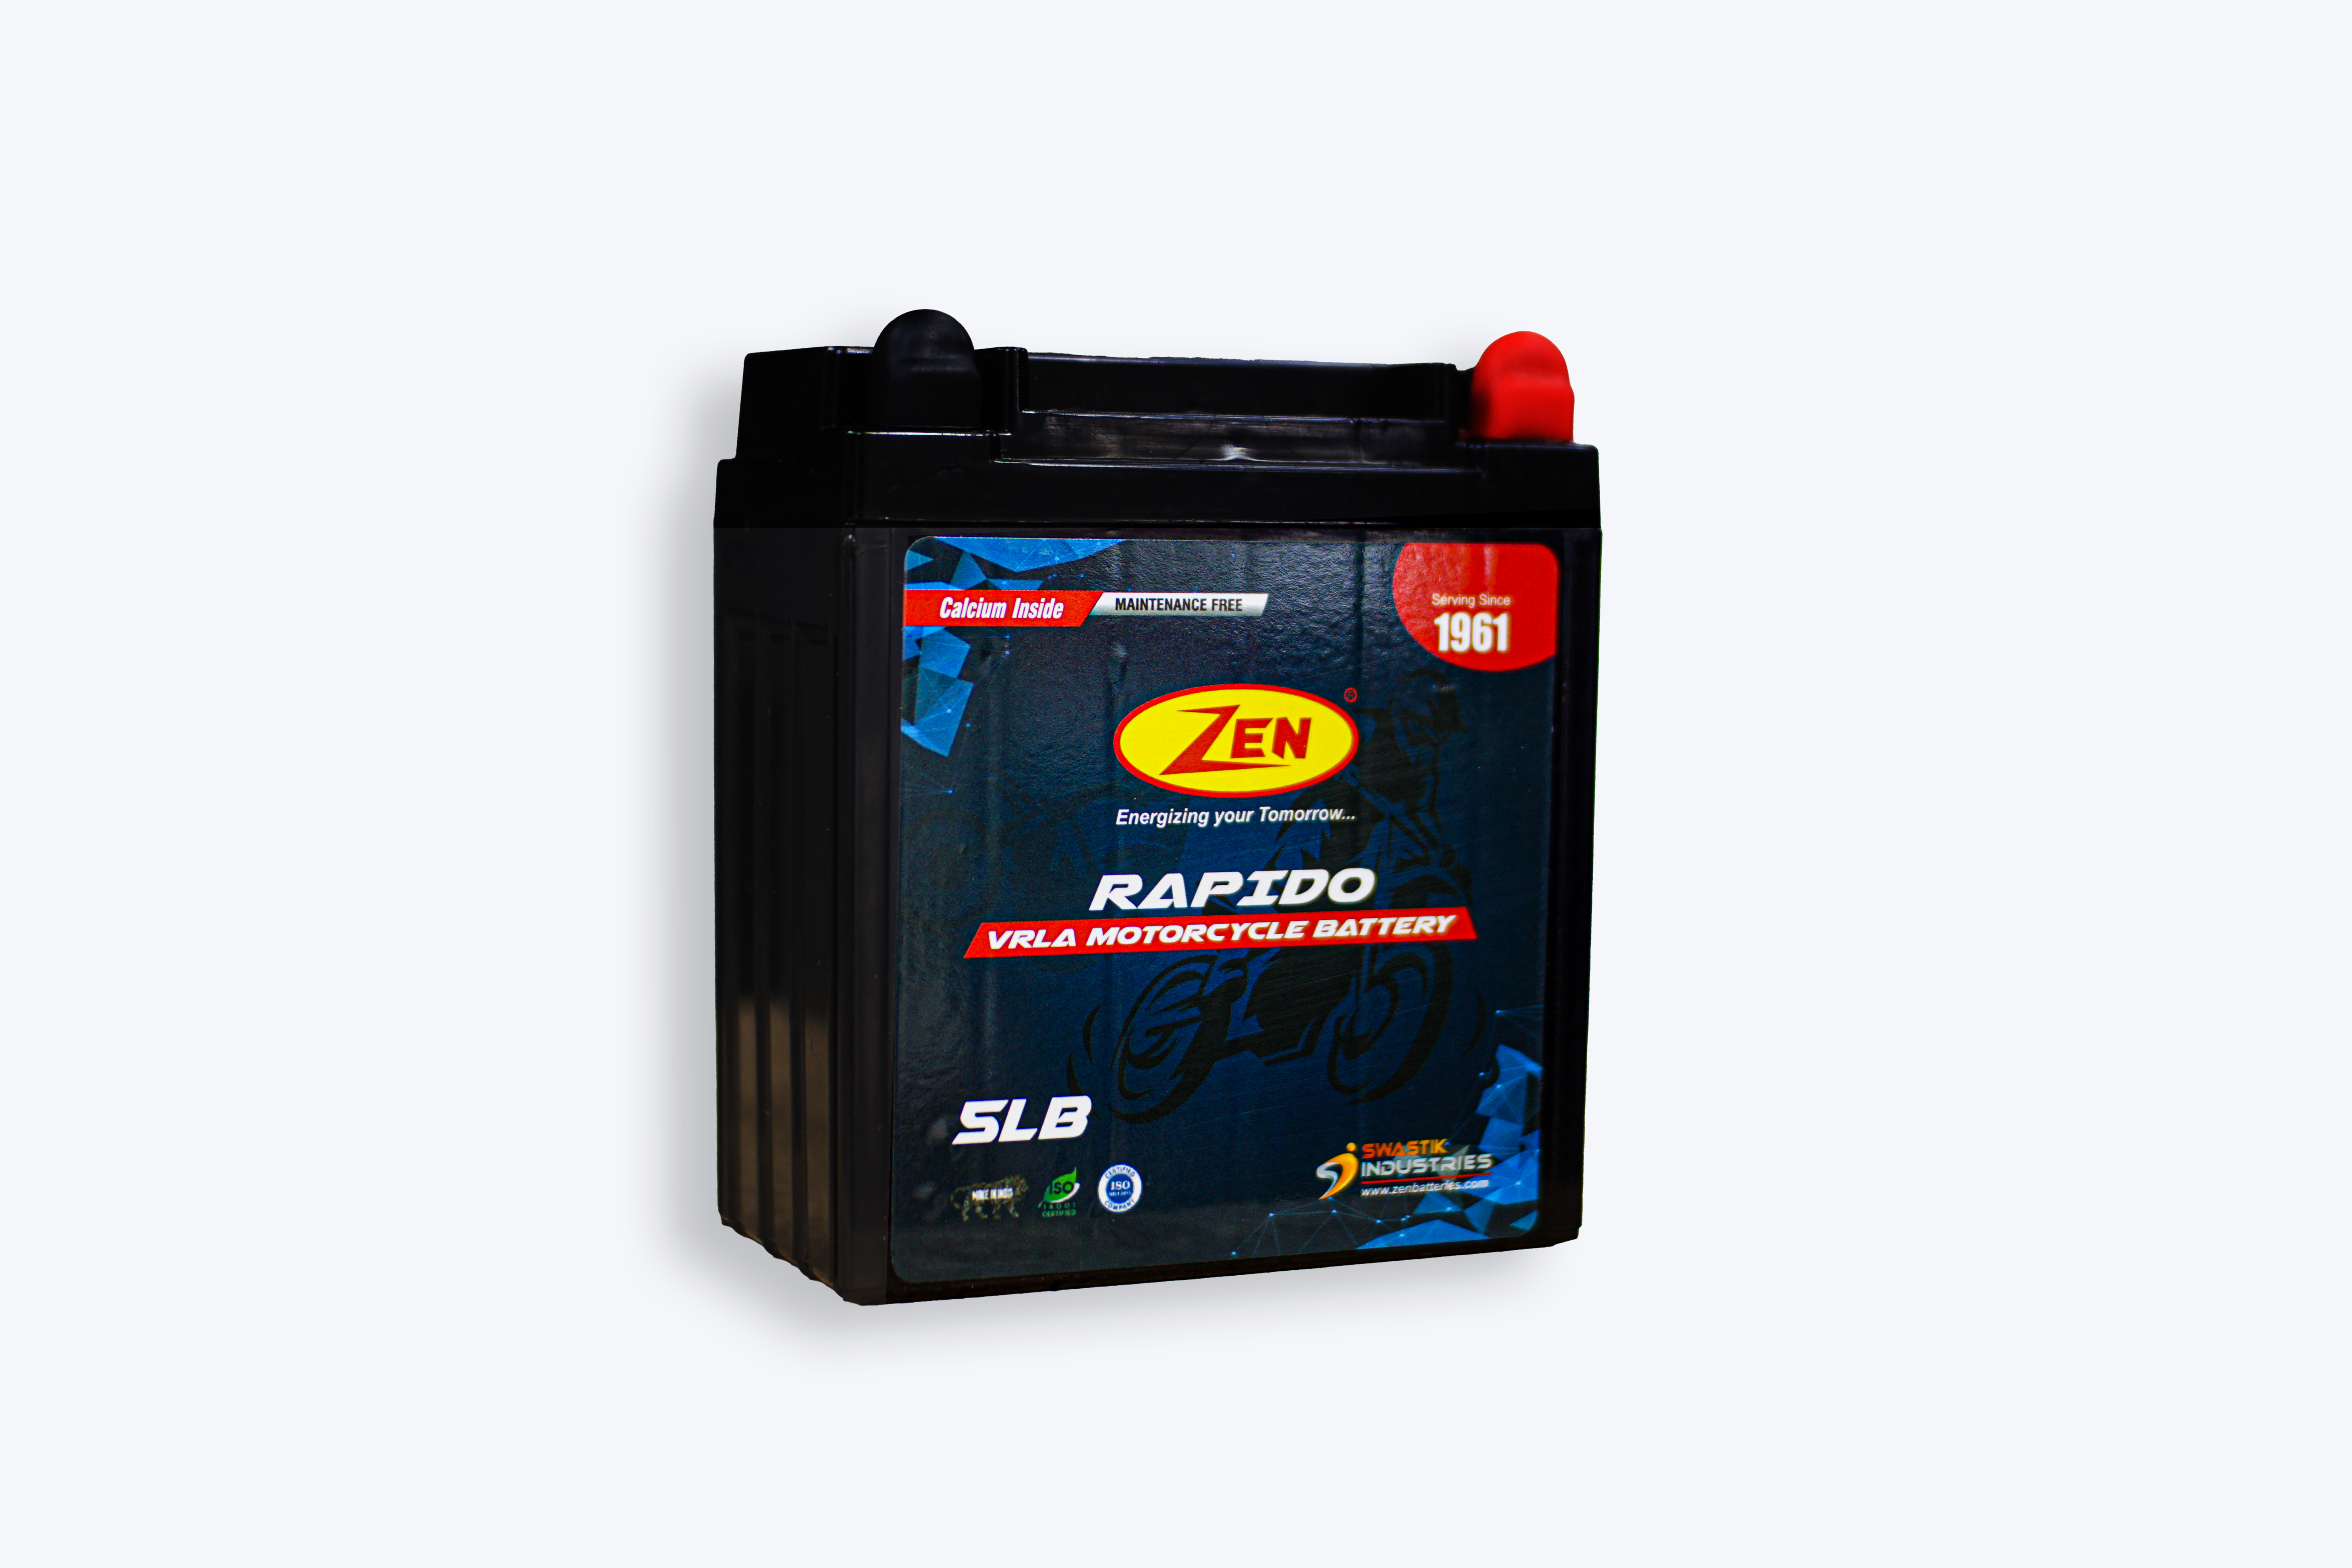 Zen 5LB Motorcycle Batteries